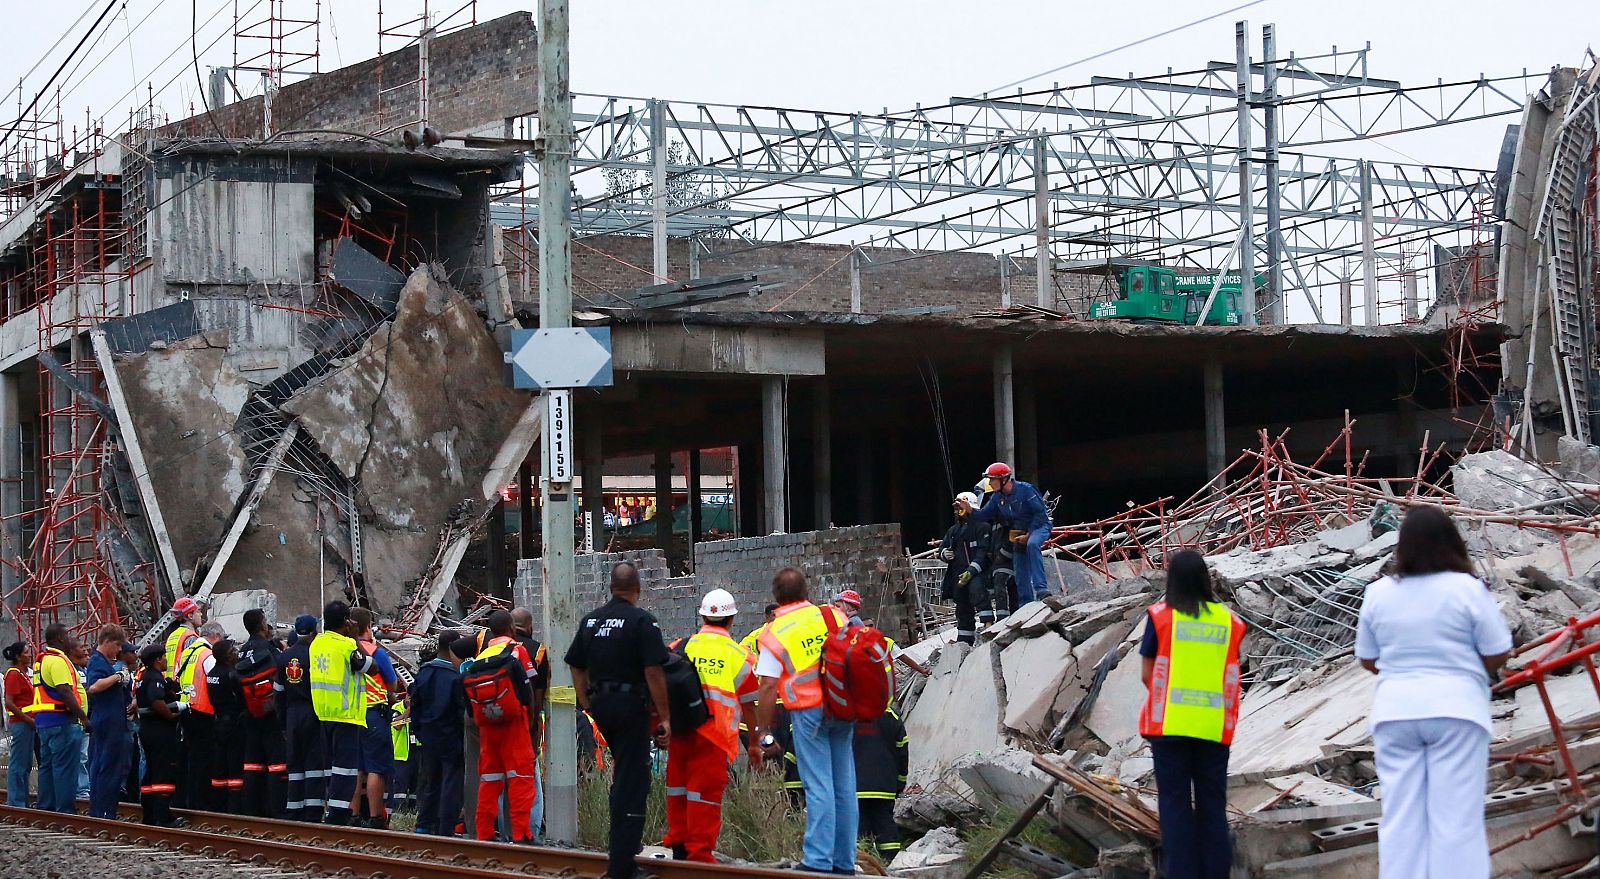 Las autoridades sudafricanas temen que haya 50 obreros atrapados entre los escombros del centro comercial derrumbado en Tongaat, Durban.